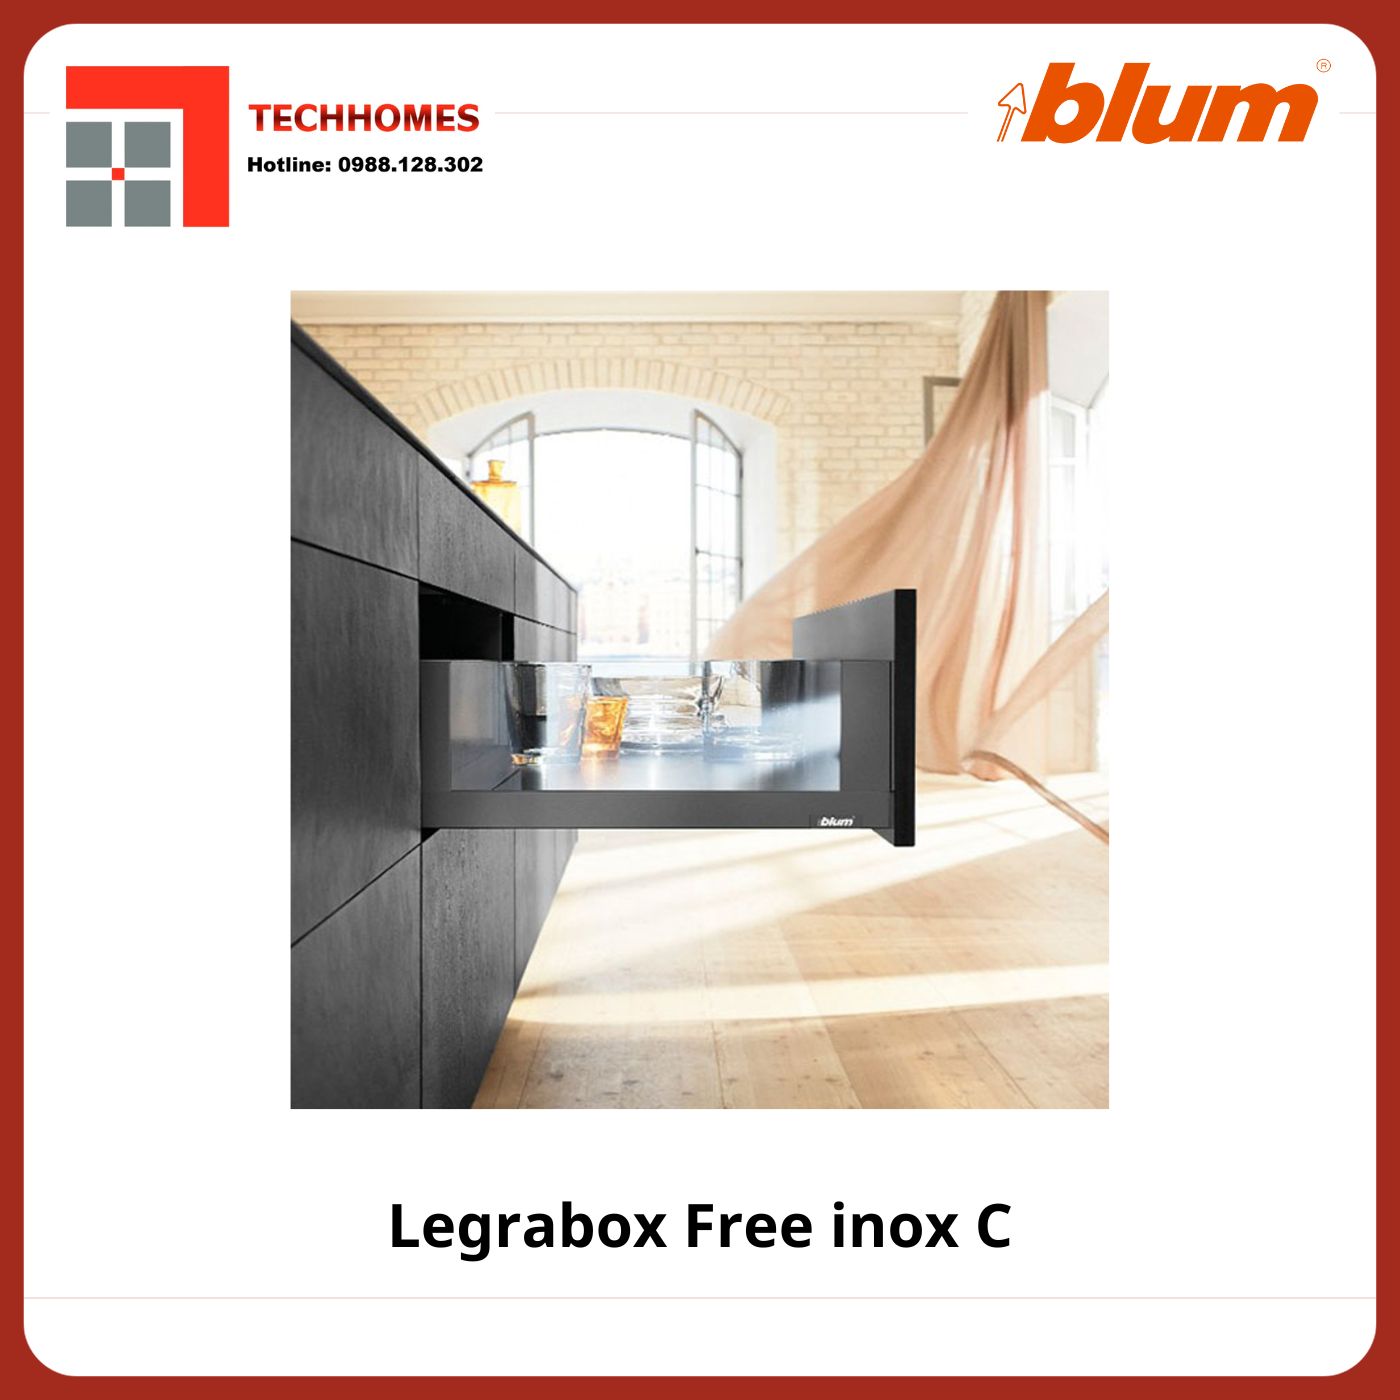 RAY HỘP BLUM LEGRABOX FREE INOX C - Legrabox Free inox C